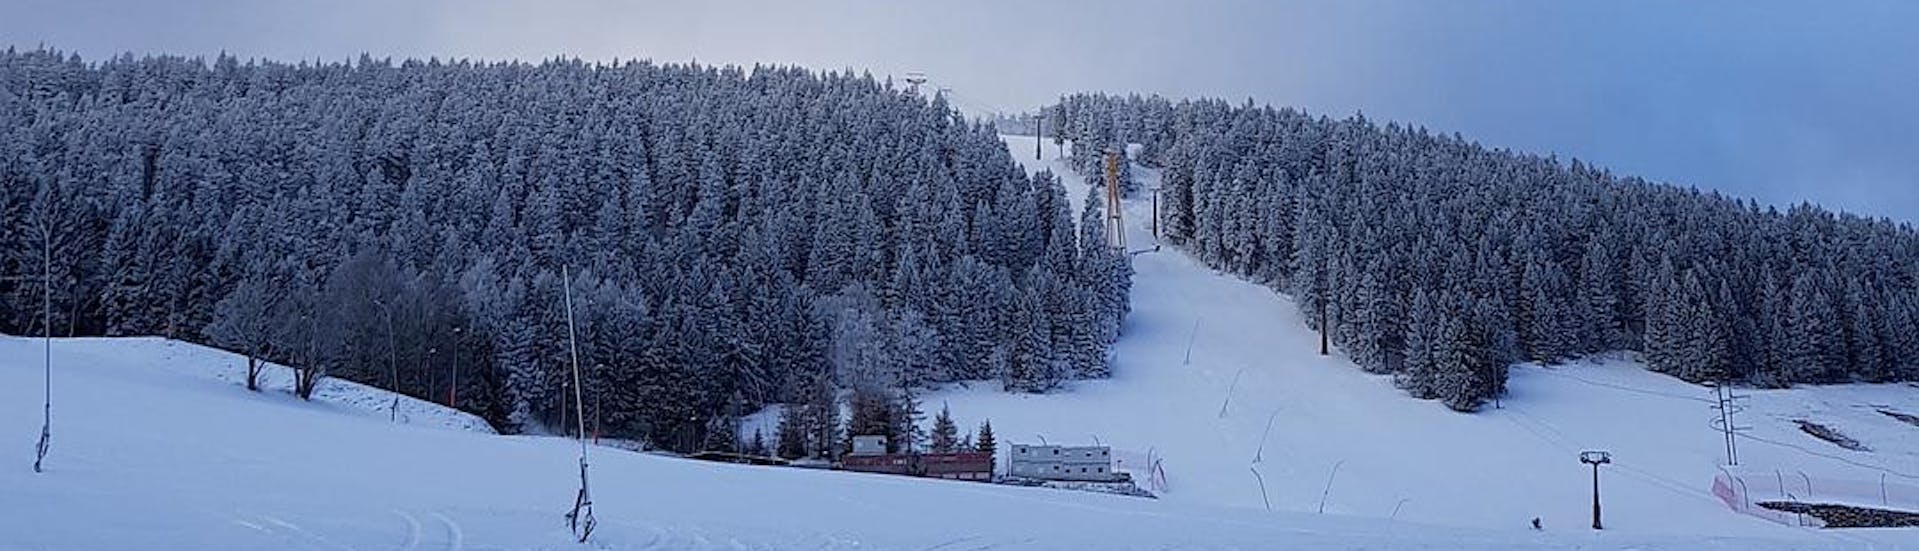 Ein Blick über die verzaubernde Winterlandschaft in Fichtelberg-Oberwiesenthal, einem deutschen Skigebiet in dem örtliche Skischulen ihre Skikurse für alle die das Skifahren lernen wollen anbieten.